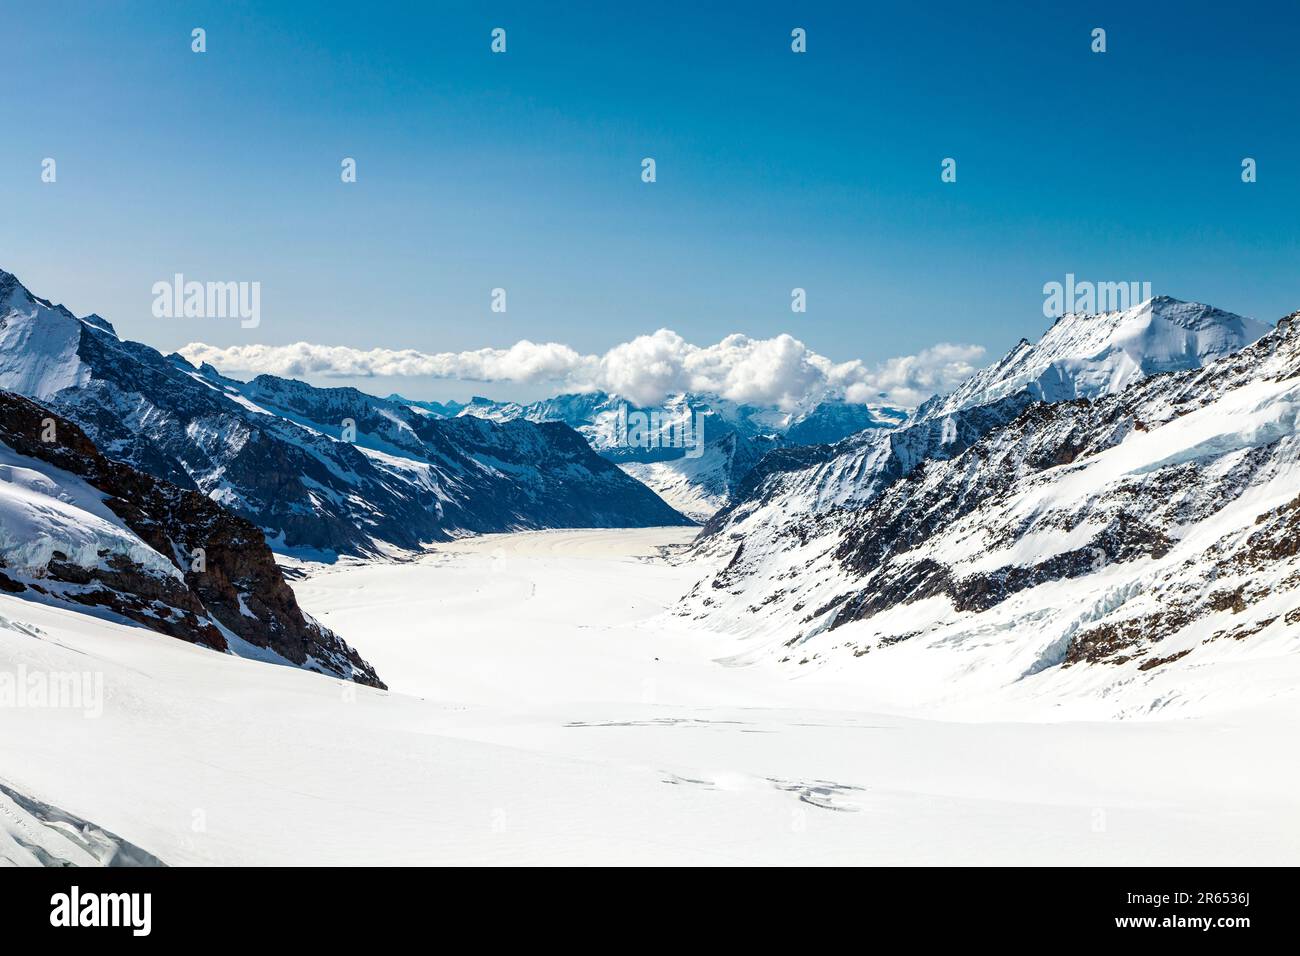 Sentier de randonnée depuis le sommet de la Jungfrau jusqu'à la cabane Mönchsjoch, vue sur les montagnes (Dreieckhorn) et le glacier d'Aletsch, Alpes suisses, Suisse Banque D'Images